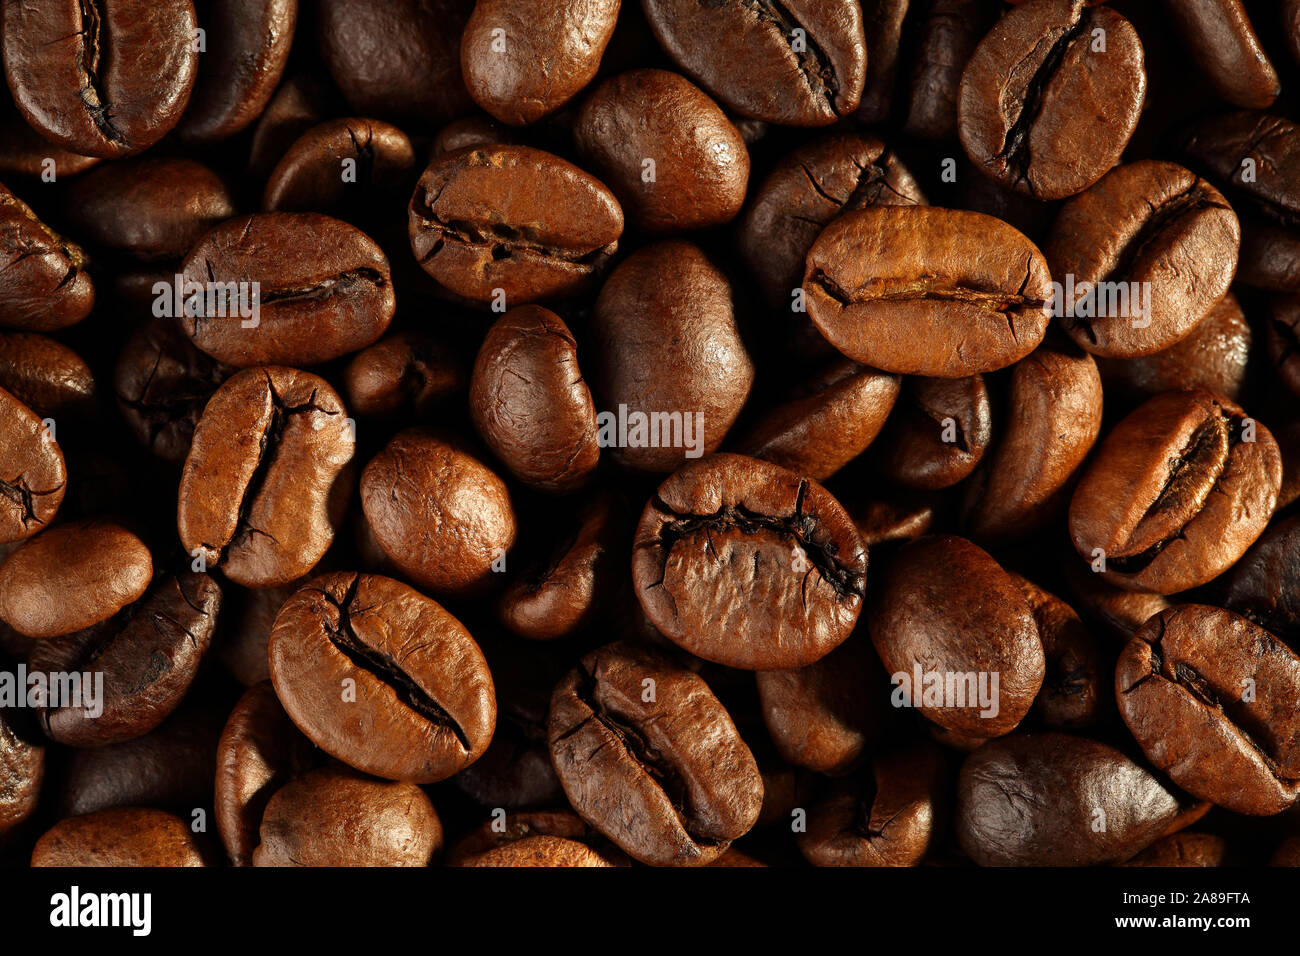 Extreme close up appena tostato, lucido e i chicchi di caffè. Top down vew. Macro food texture di sfondo Foto Stock